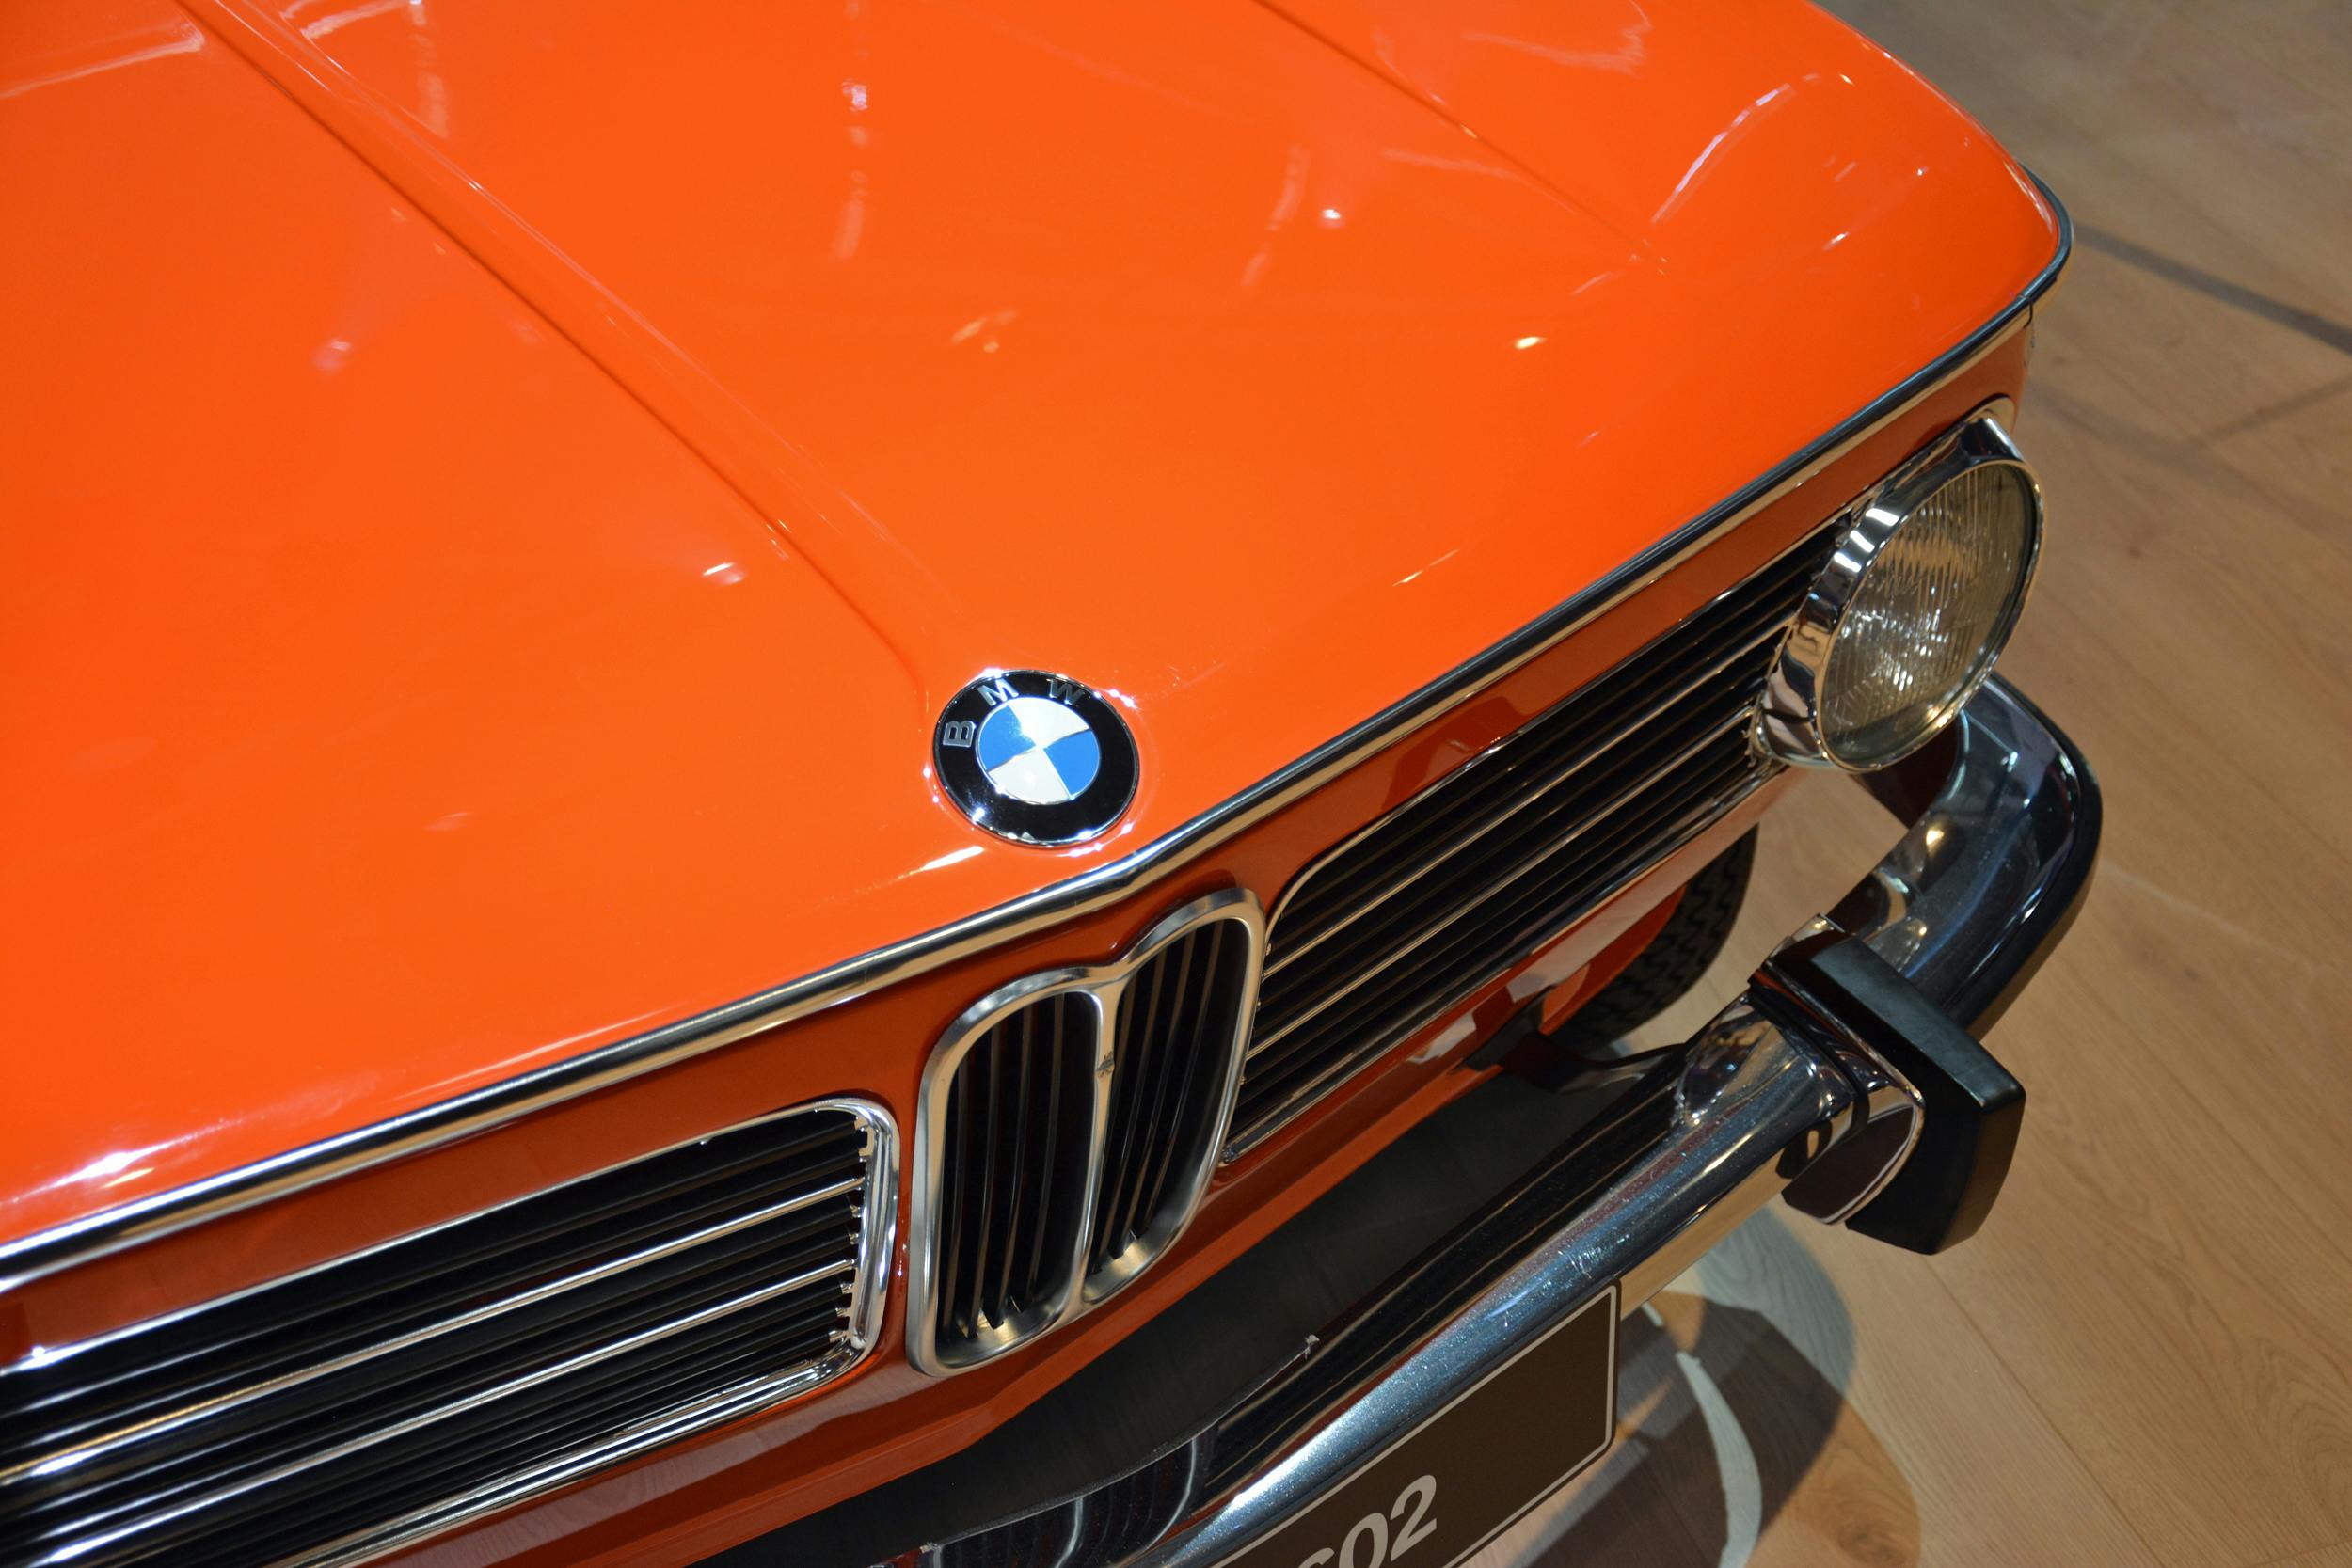 1972 BMW 1602 electric car front end emblem